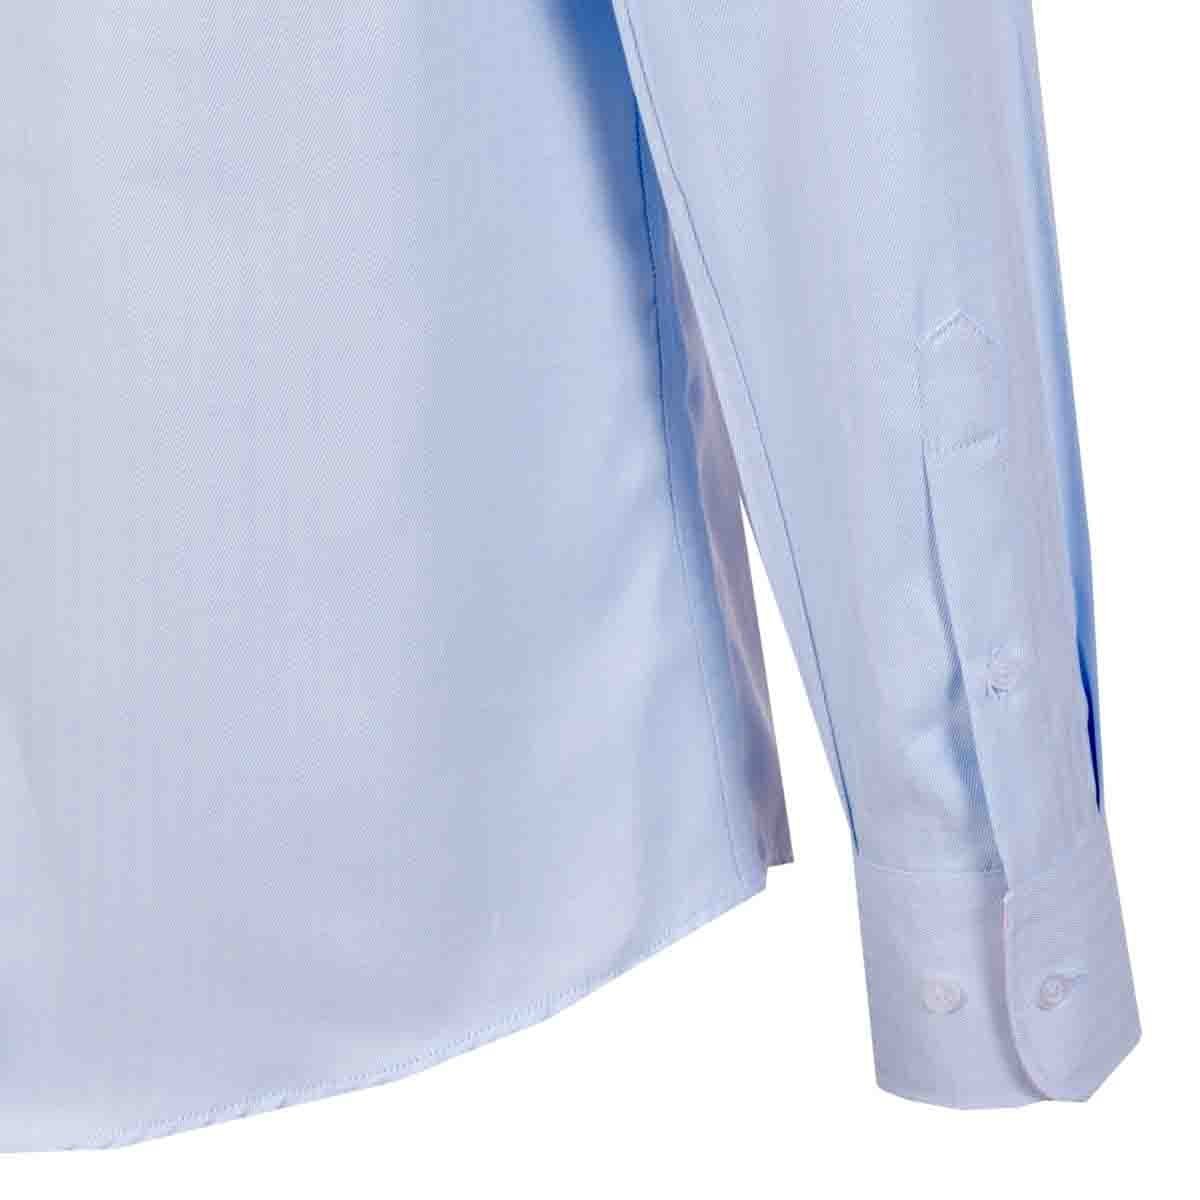 Camisa de Vestir Slim Fit Color Azul Claro Carlo Corinto